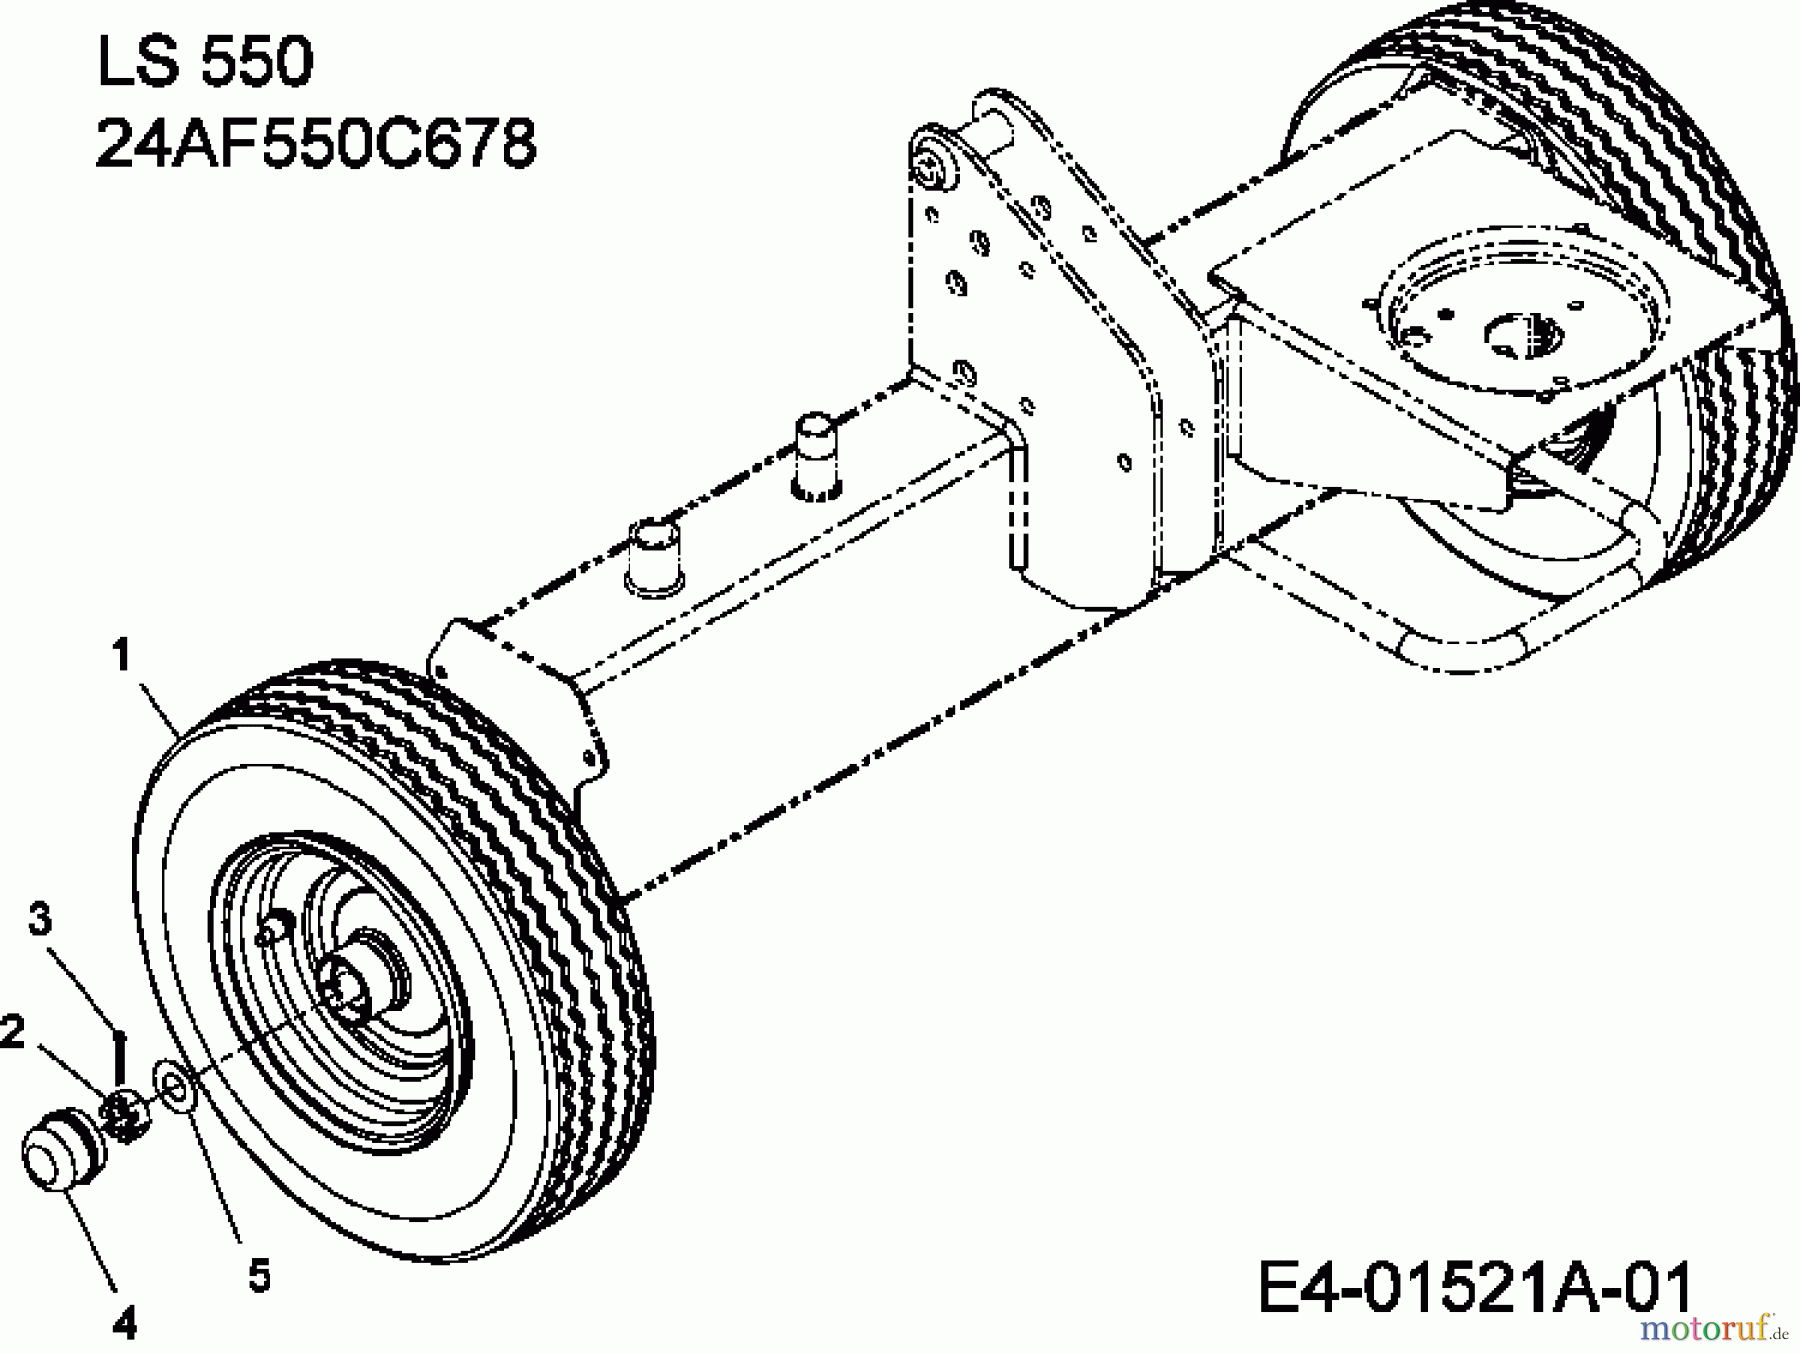  MTD Log splitter LS 550 24AF550C678  (2009) Wheels